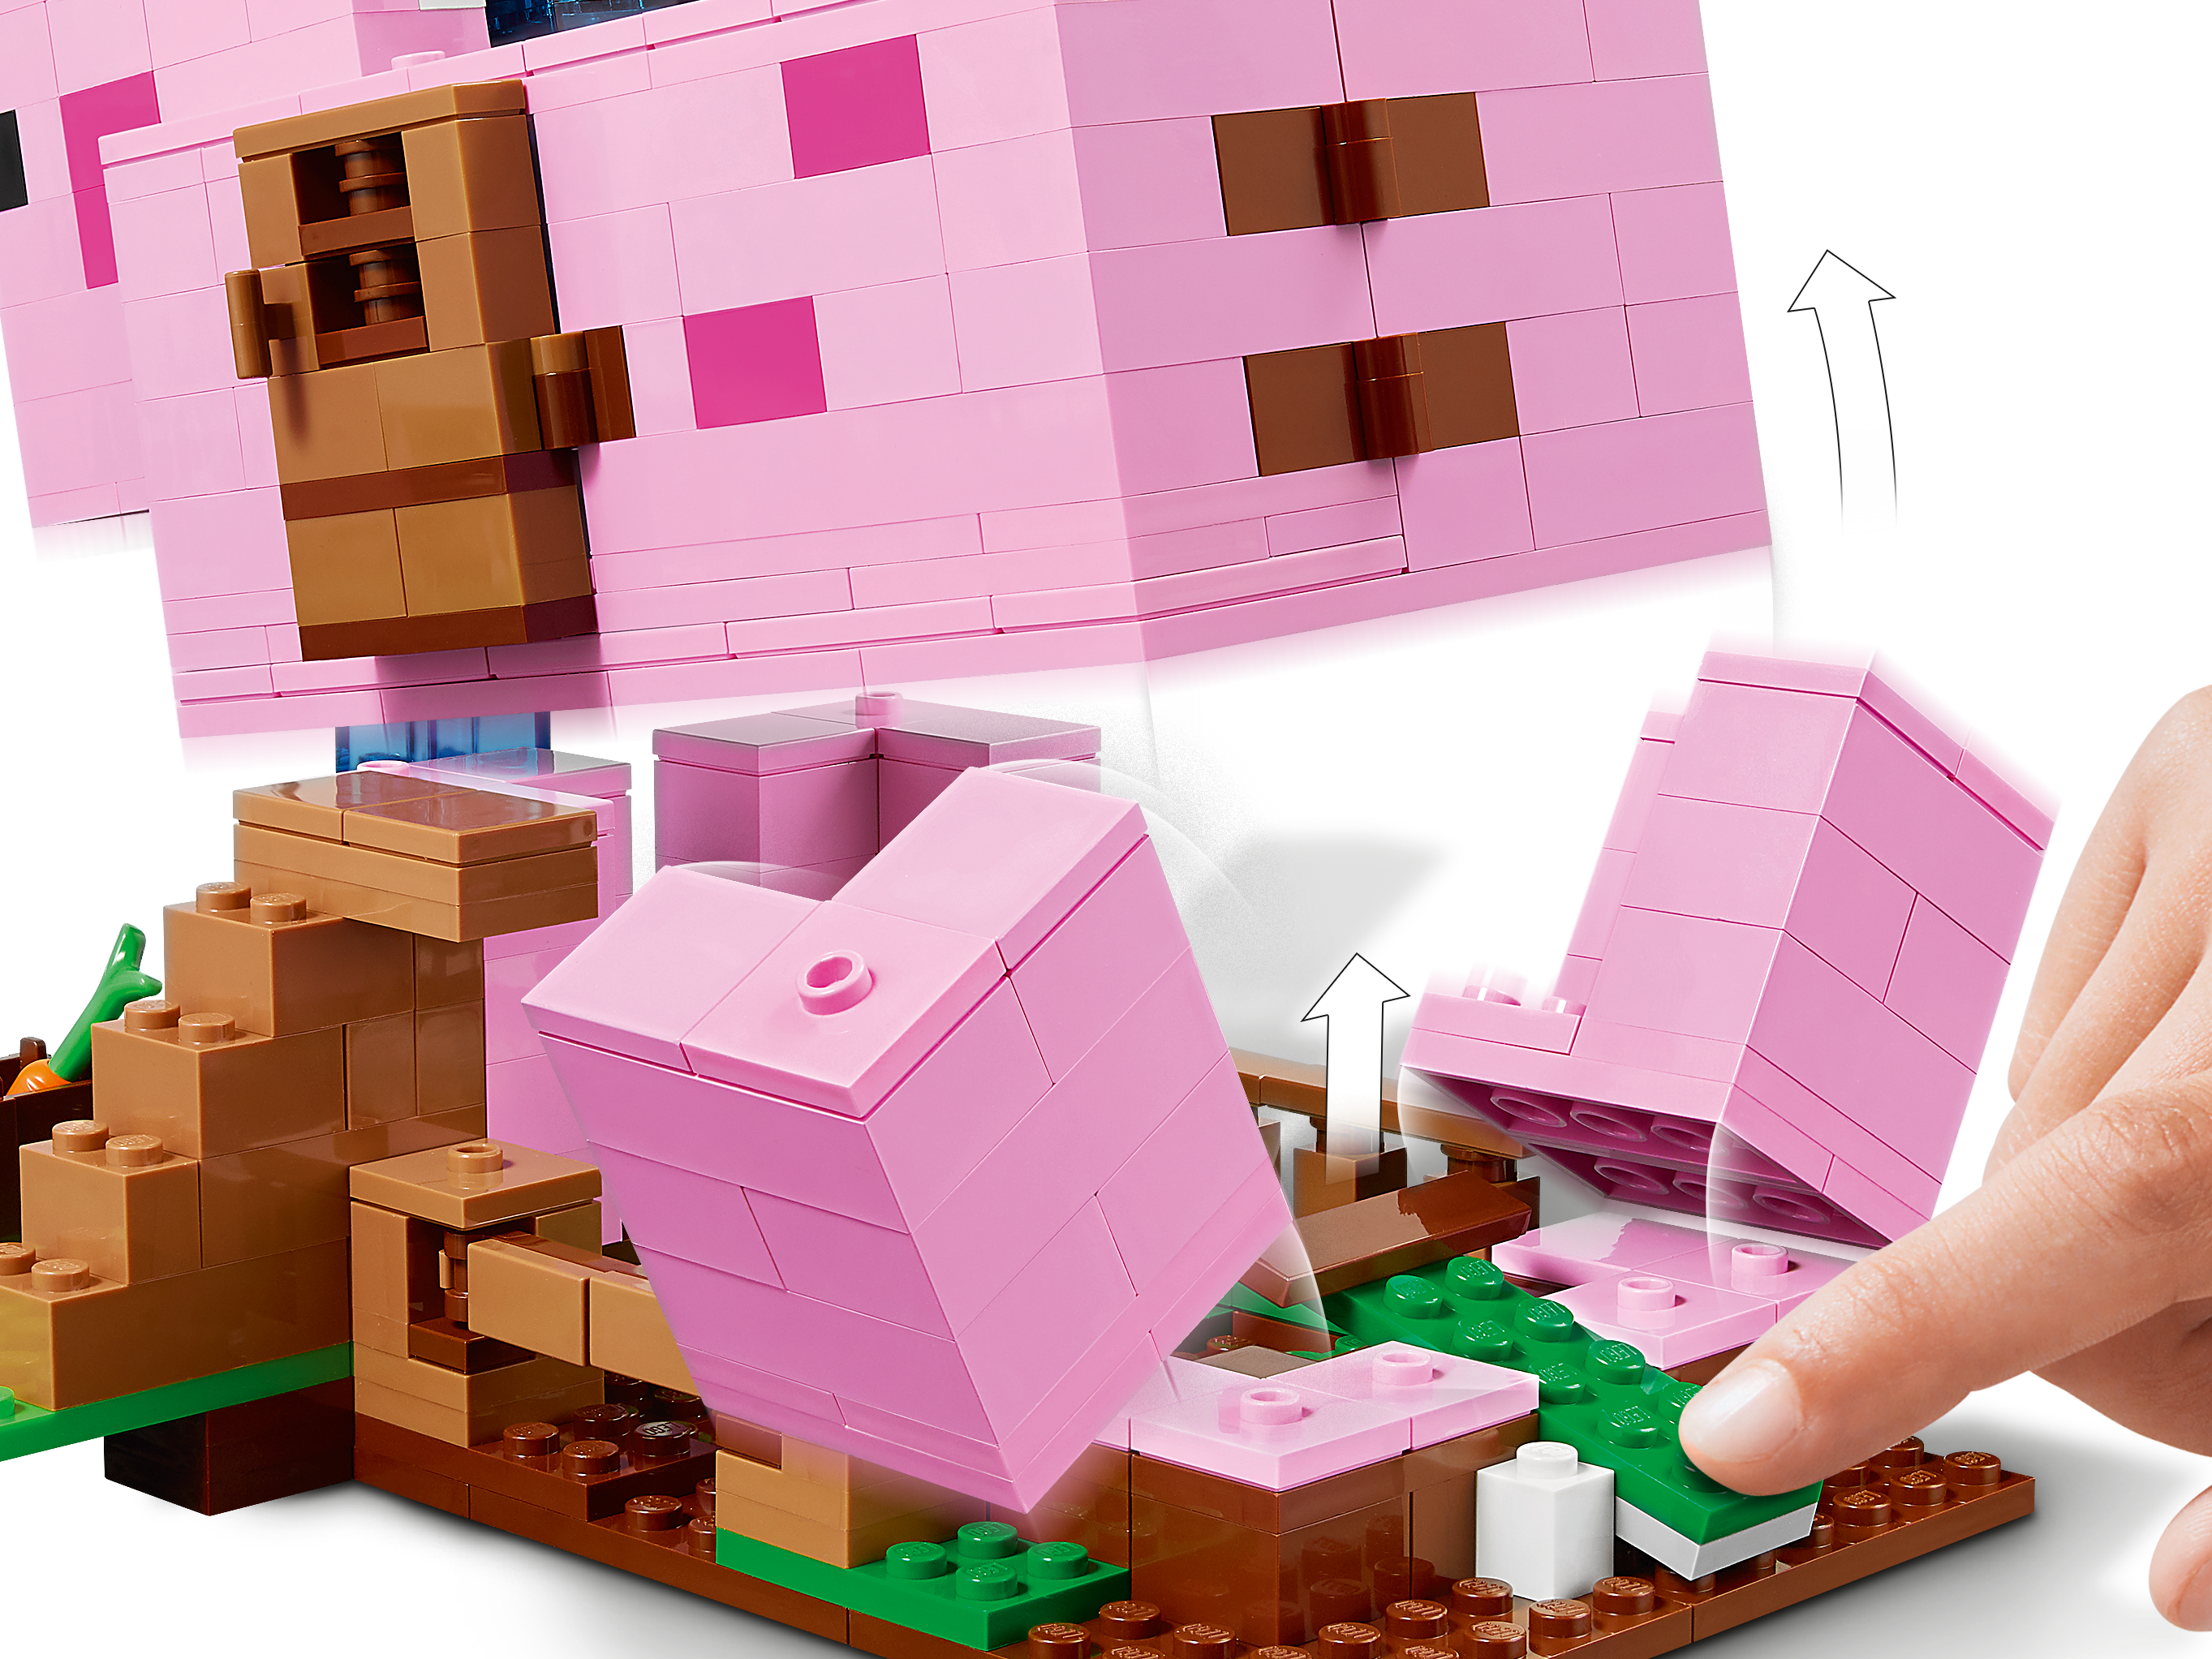 La Casa-Cerdo 21170 | Minecraft® | Oficial LEGO® Shop ES